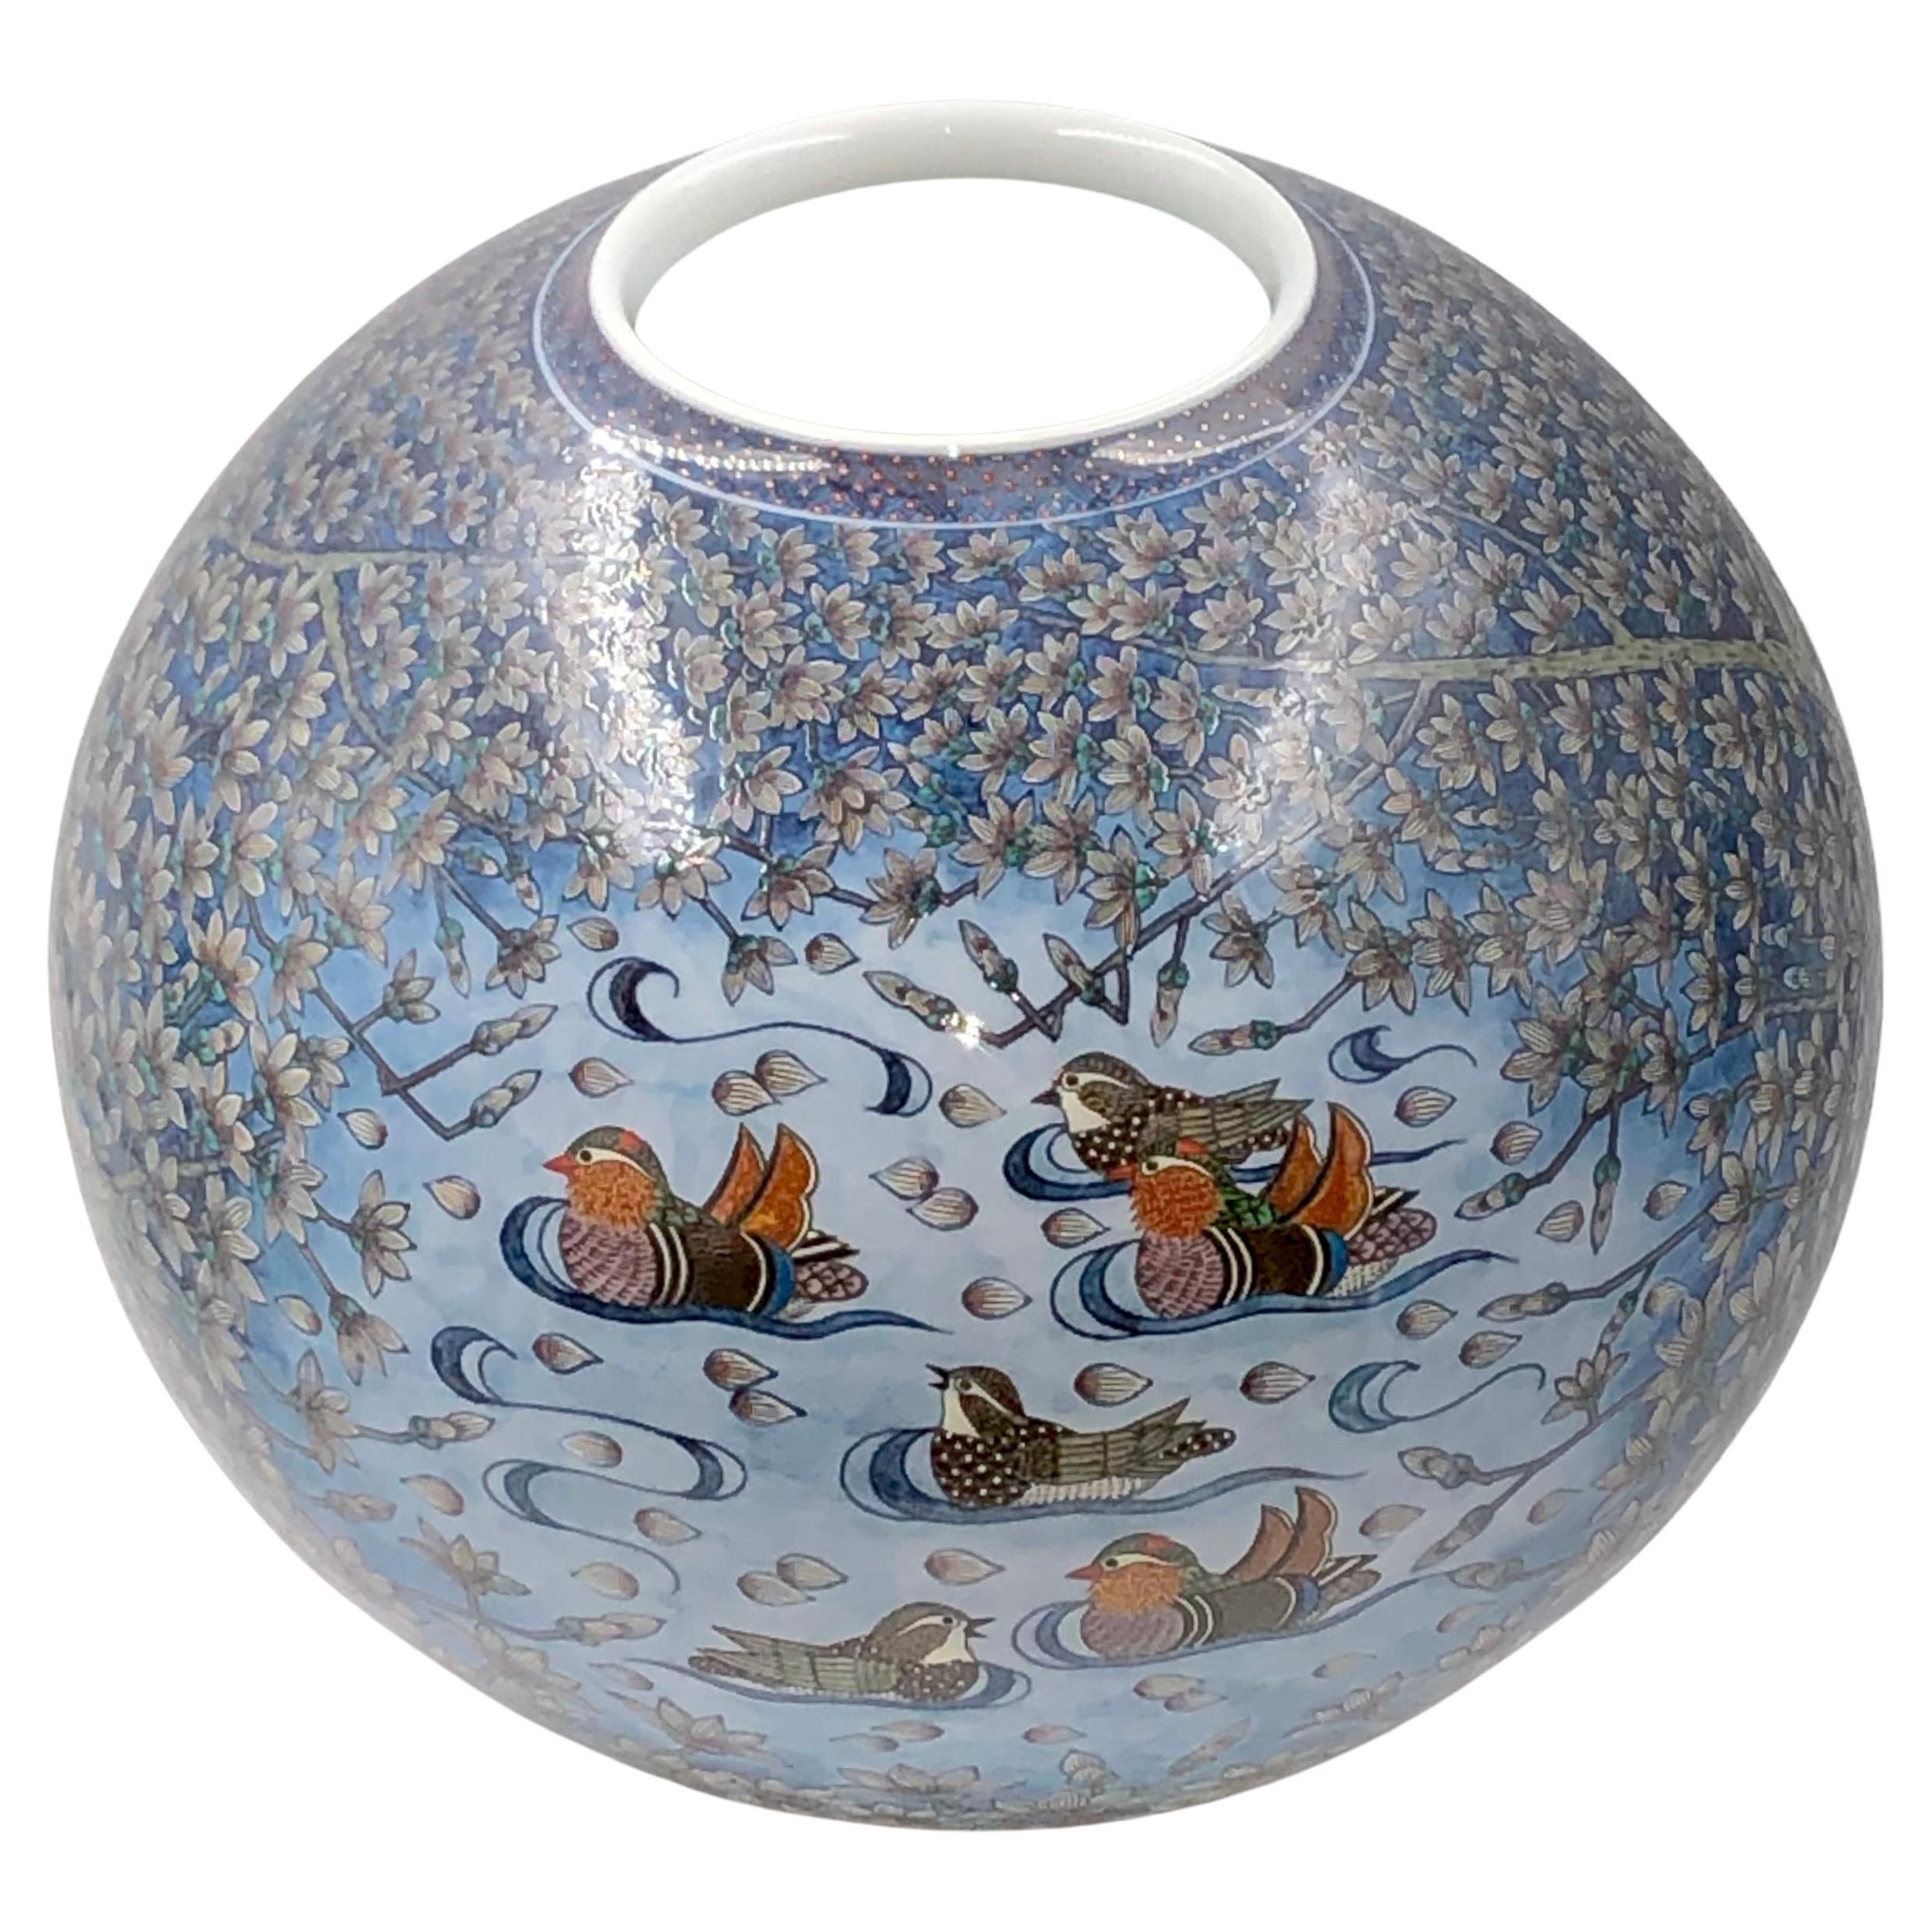 Extraordinaire vase en porcelaine décorative contemporaine de qualité muséale japonaise, minutieusement peint à la main dans de superbes teintes de bleu sur un corps magnifiquement façonné. Il s'agit d'un chef-d'œuvre signé par la deuxième